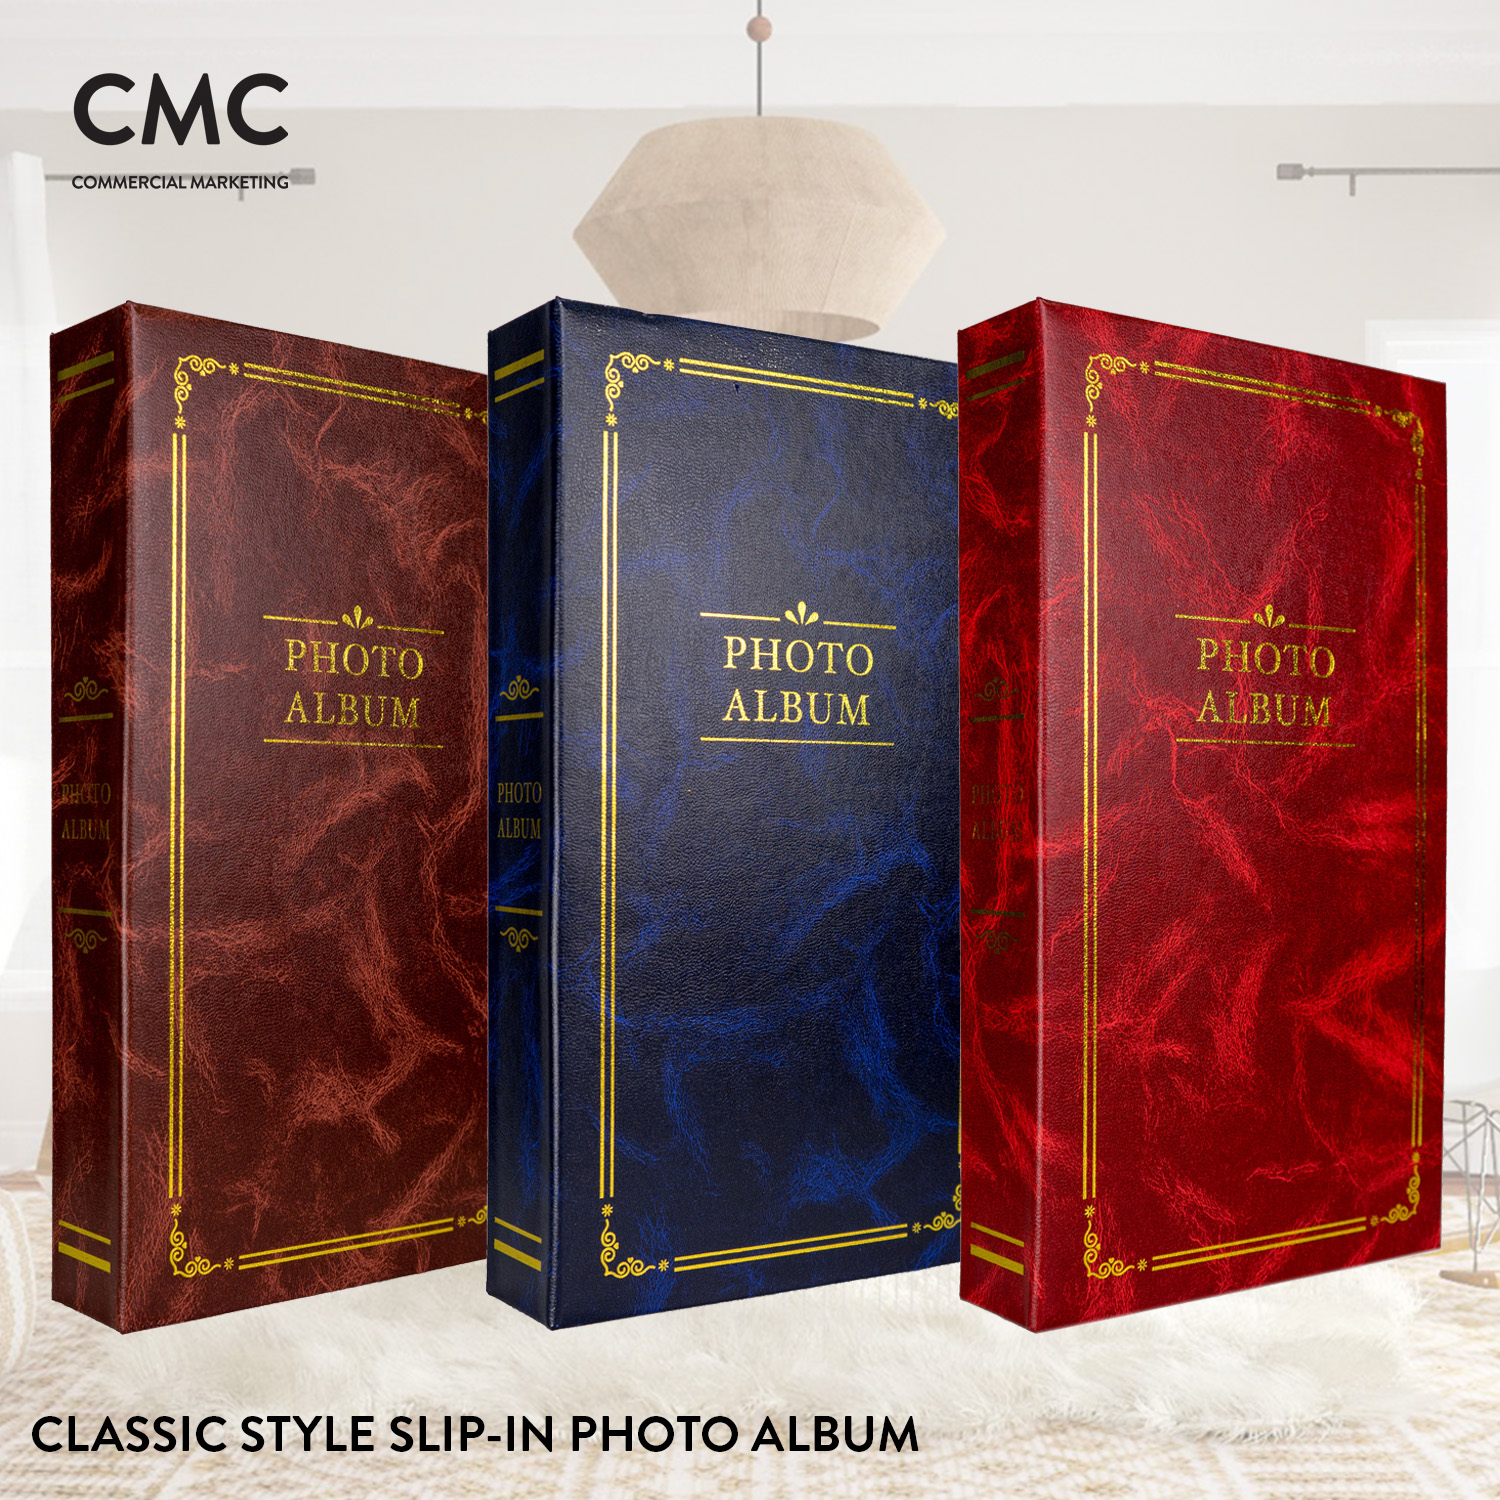 CMC อัลบั้มรูป แบบสอด 300 รูป ขนาด 4x6 (4R) สไตล์คลาสสิค